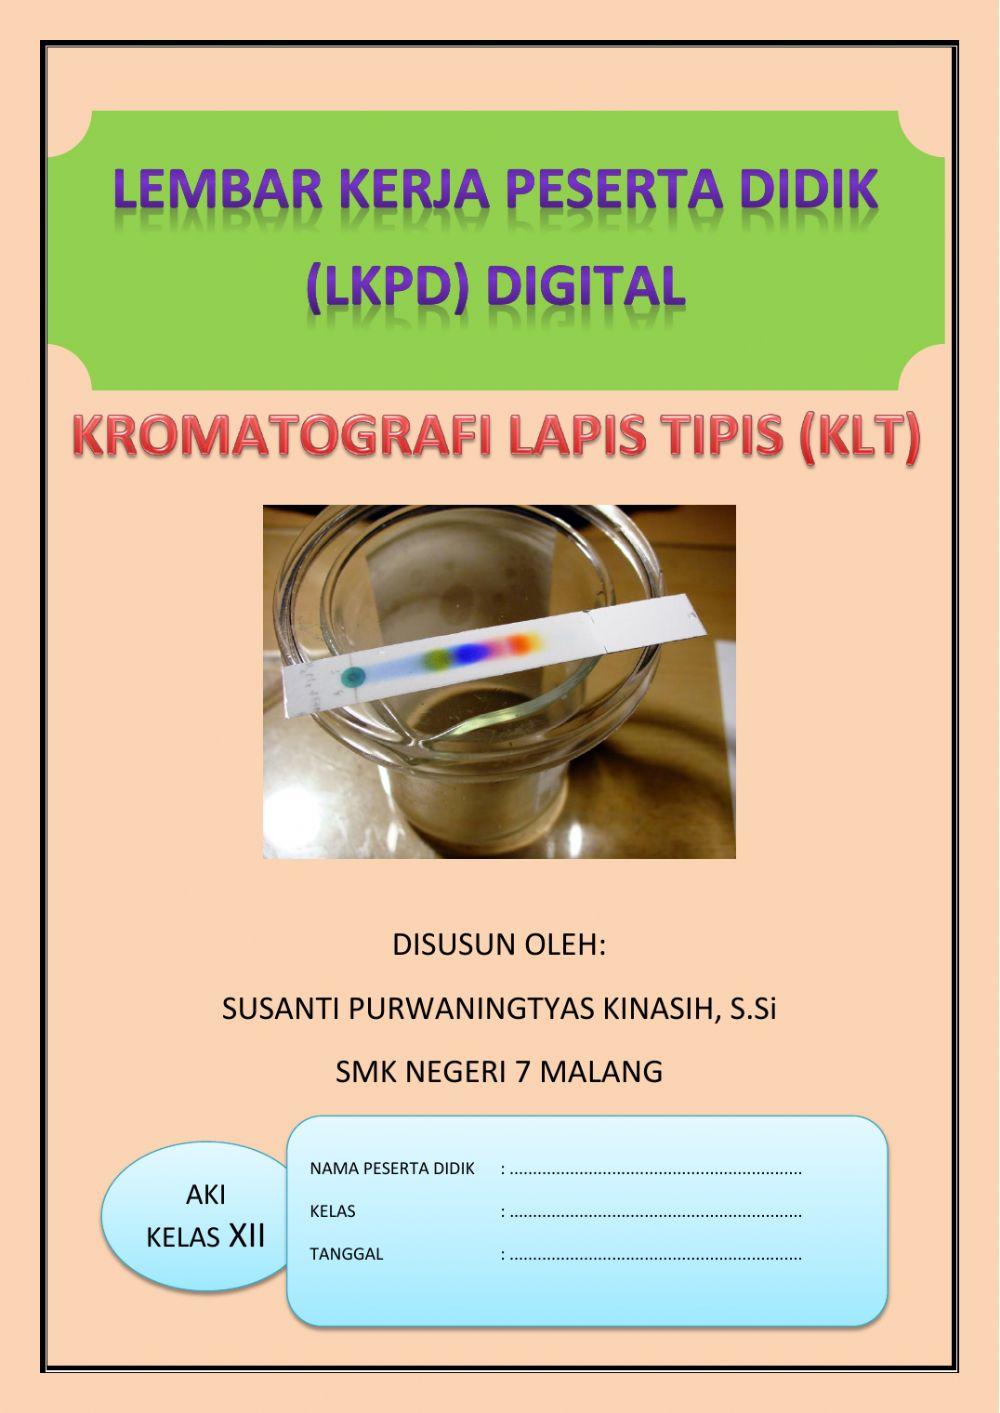 LKPD Kromatografi Lapis Tipis